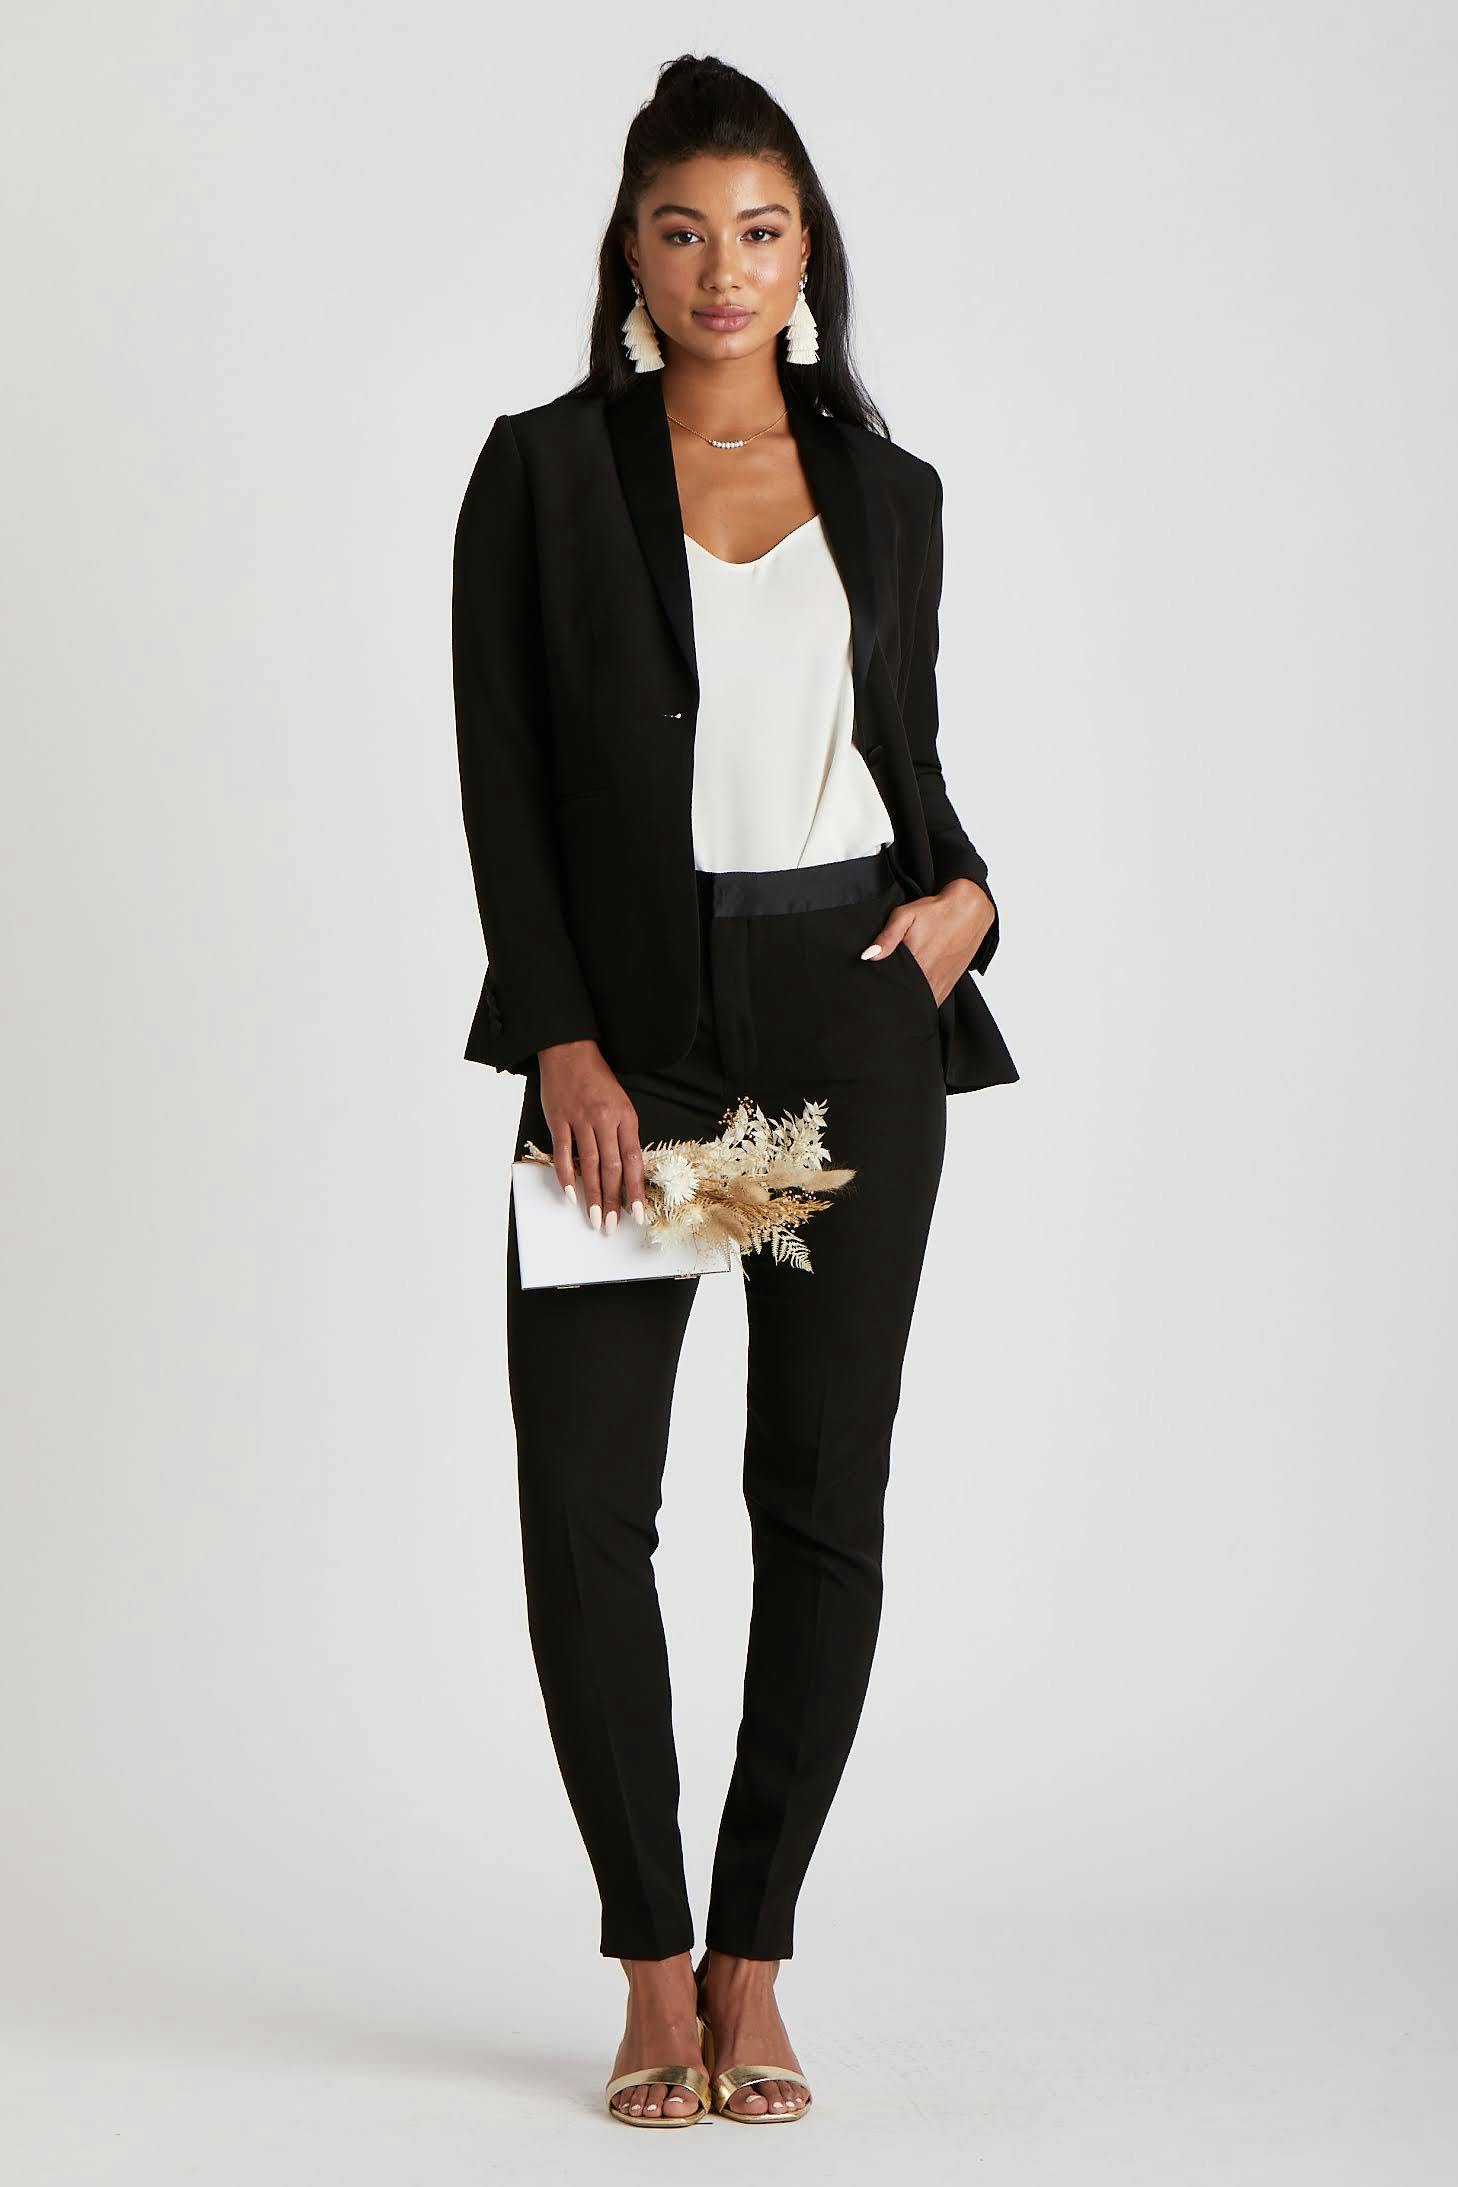 Black Pantsuit for Women, Black Formal Suit Set for Women, Black Wedding  Guest Pantsuit for Women, Blazer Trouser Suit for Women 